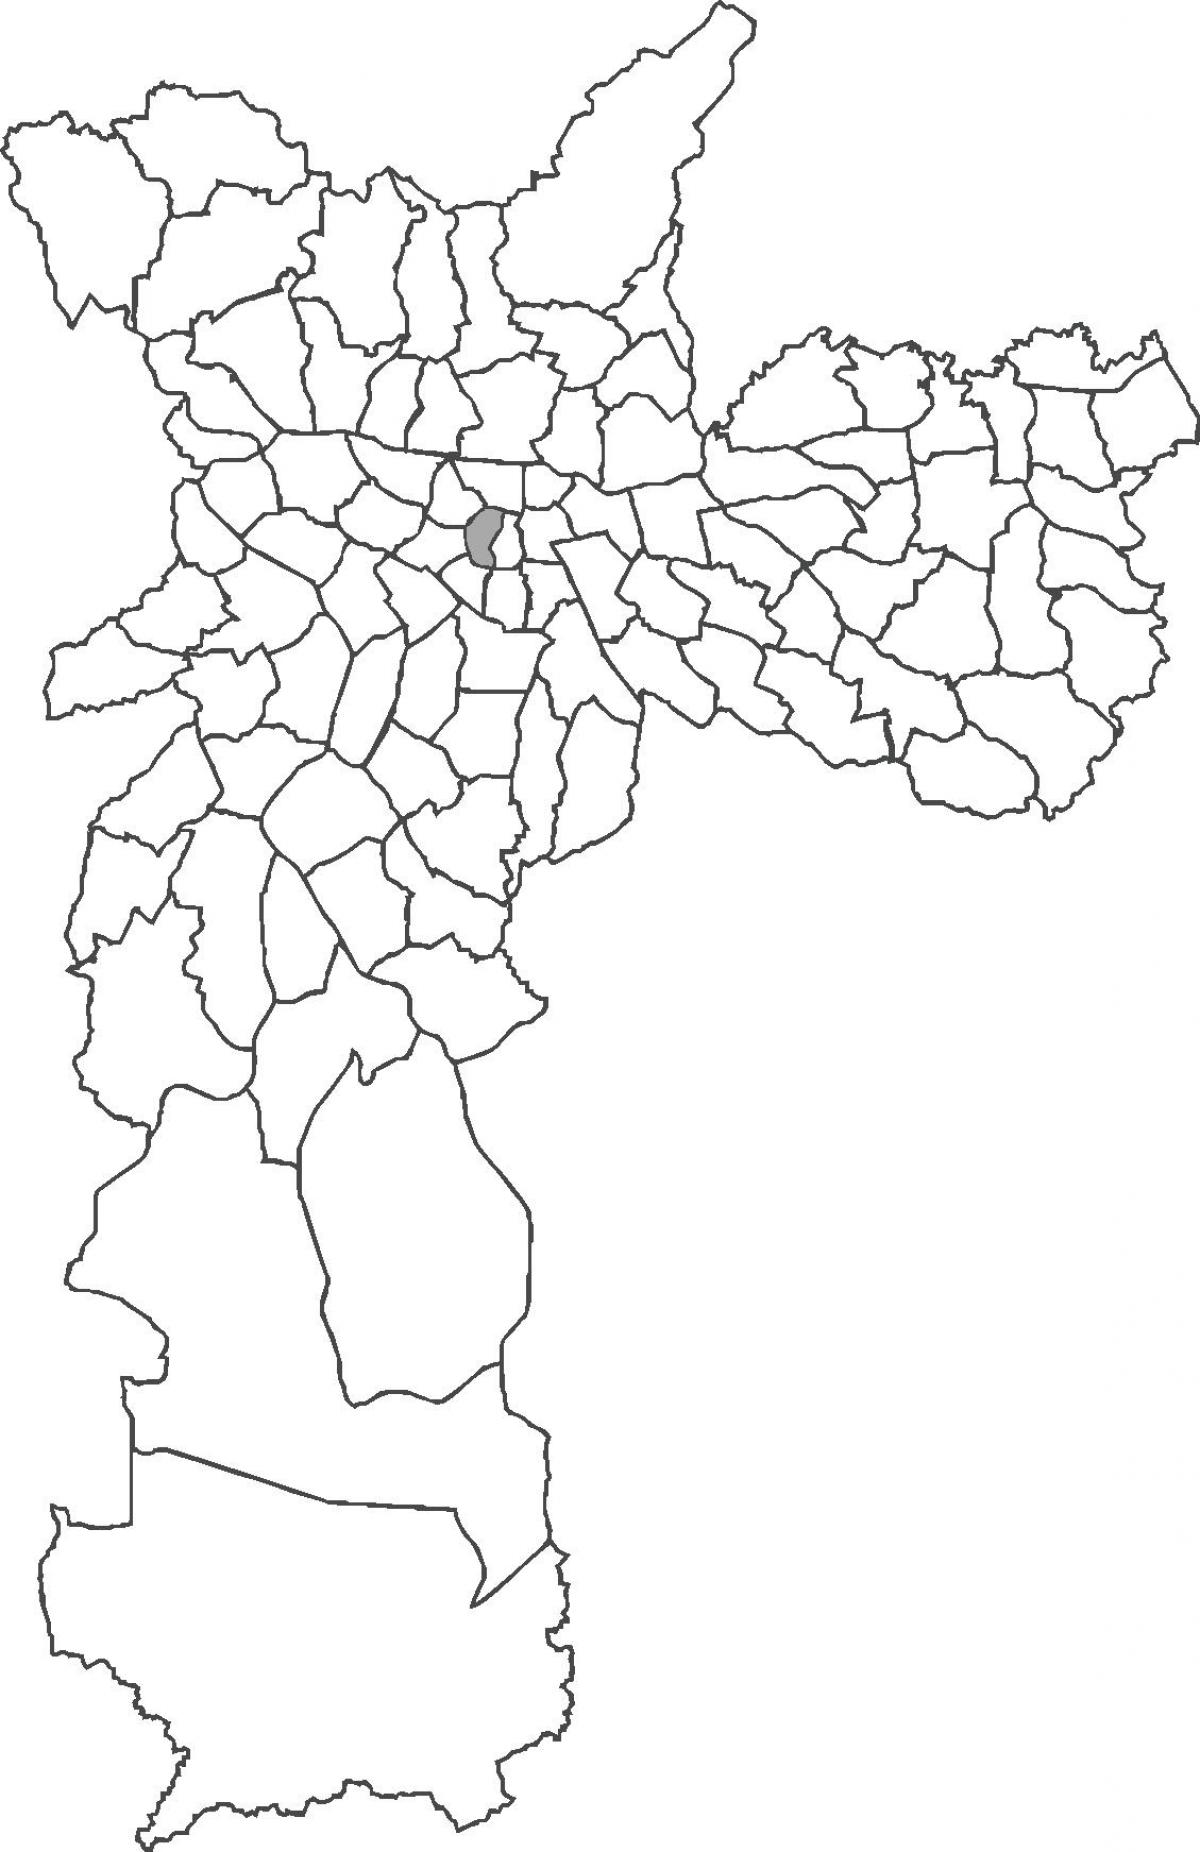 Peta República daerah